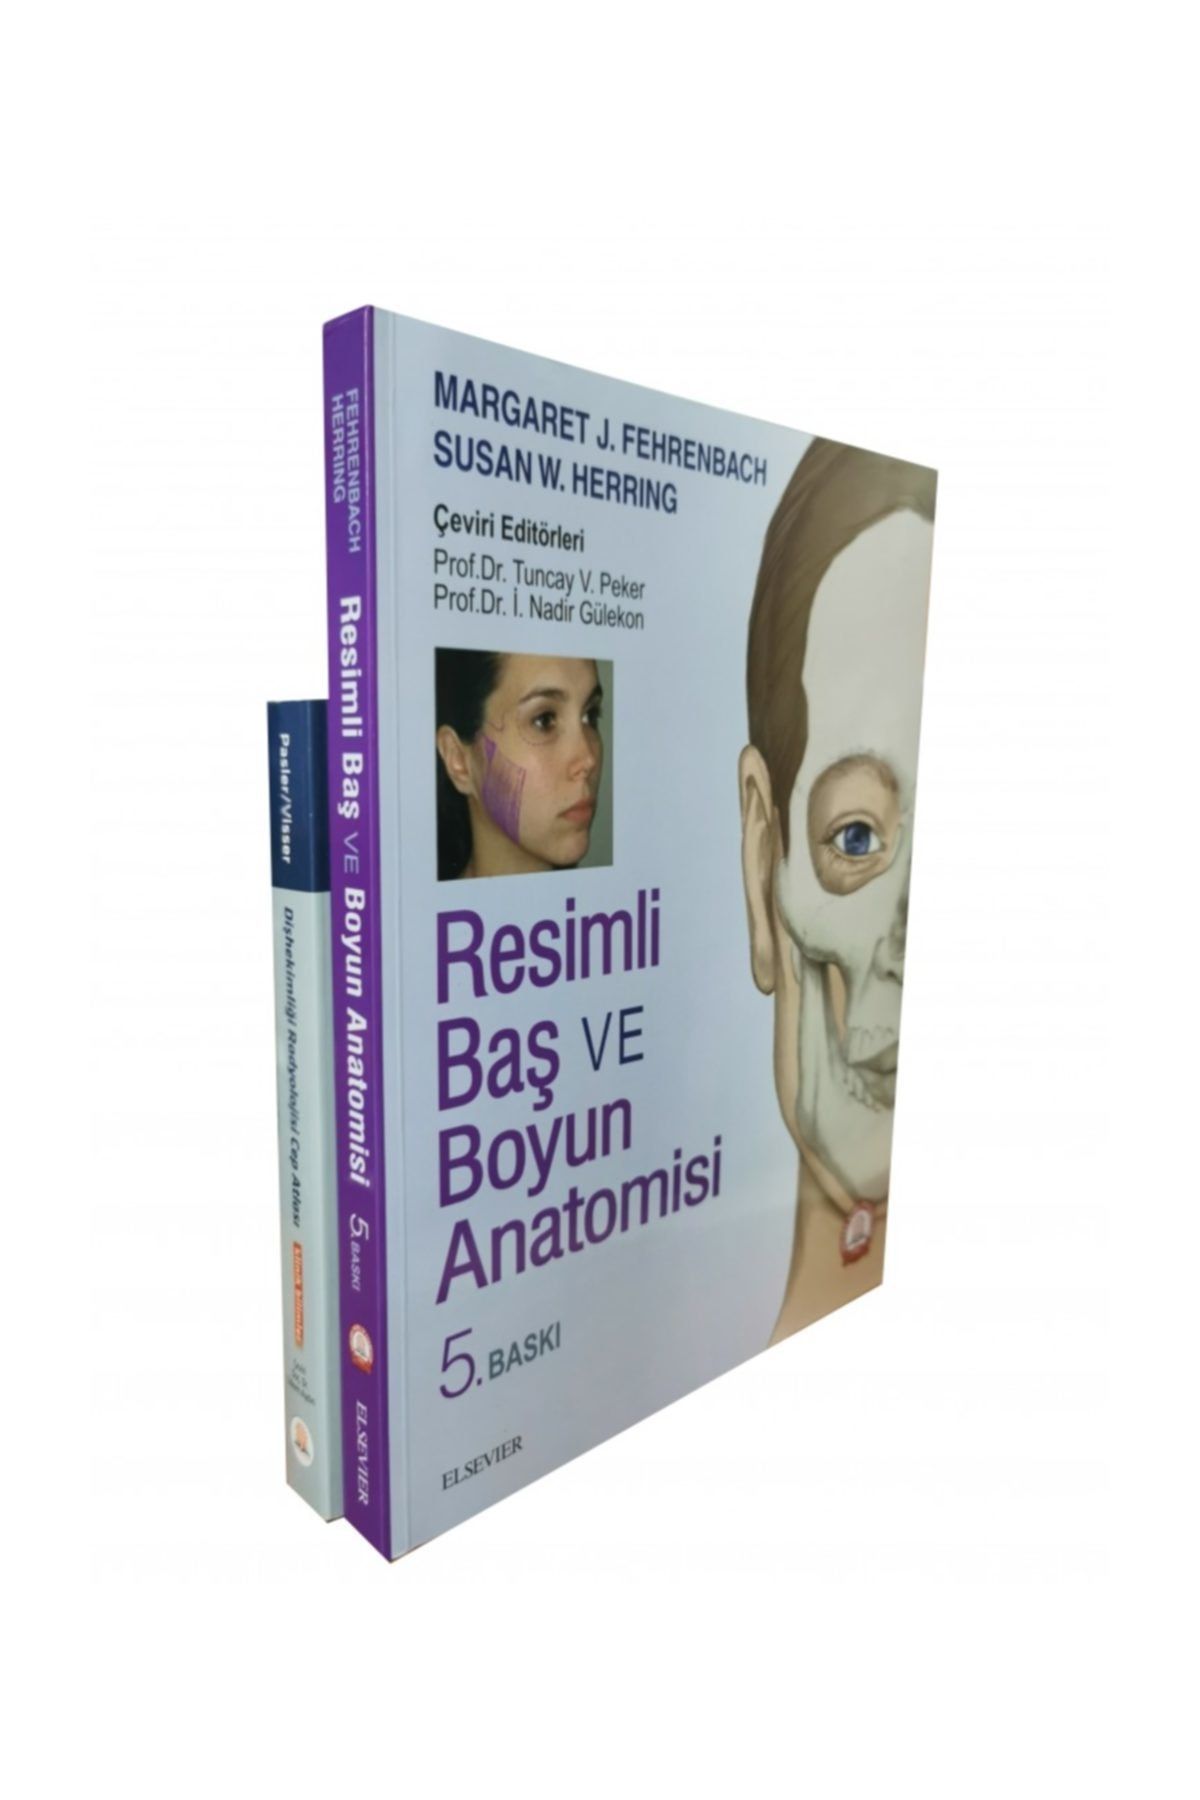 Ankara Nobel Tıp Kitapevleri Resimli Baş Ve Boyun Anatomisi